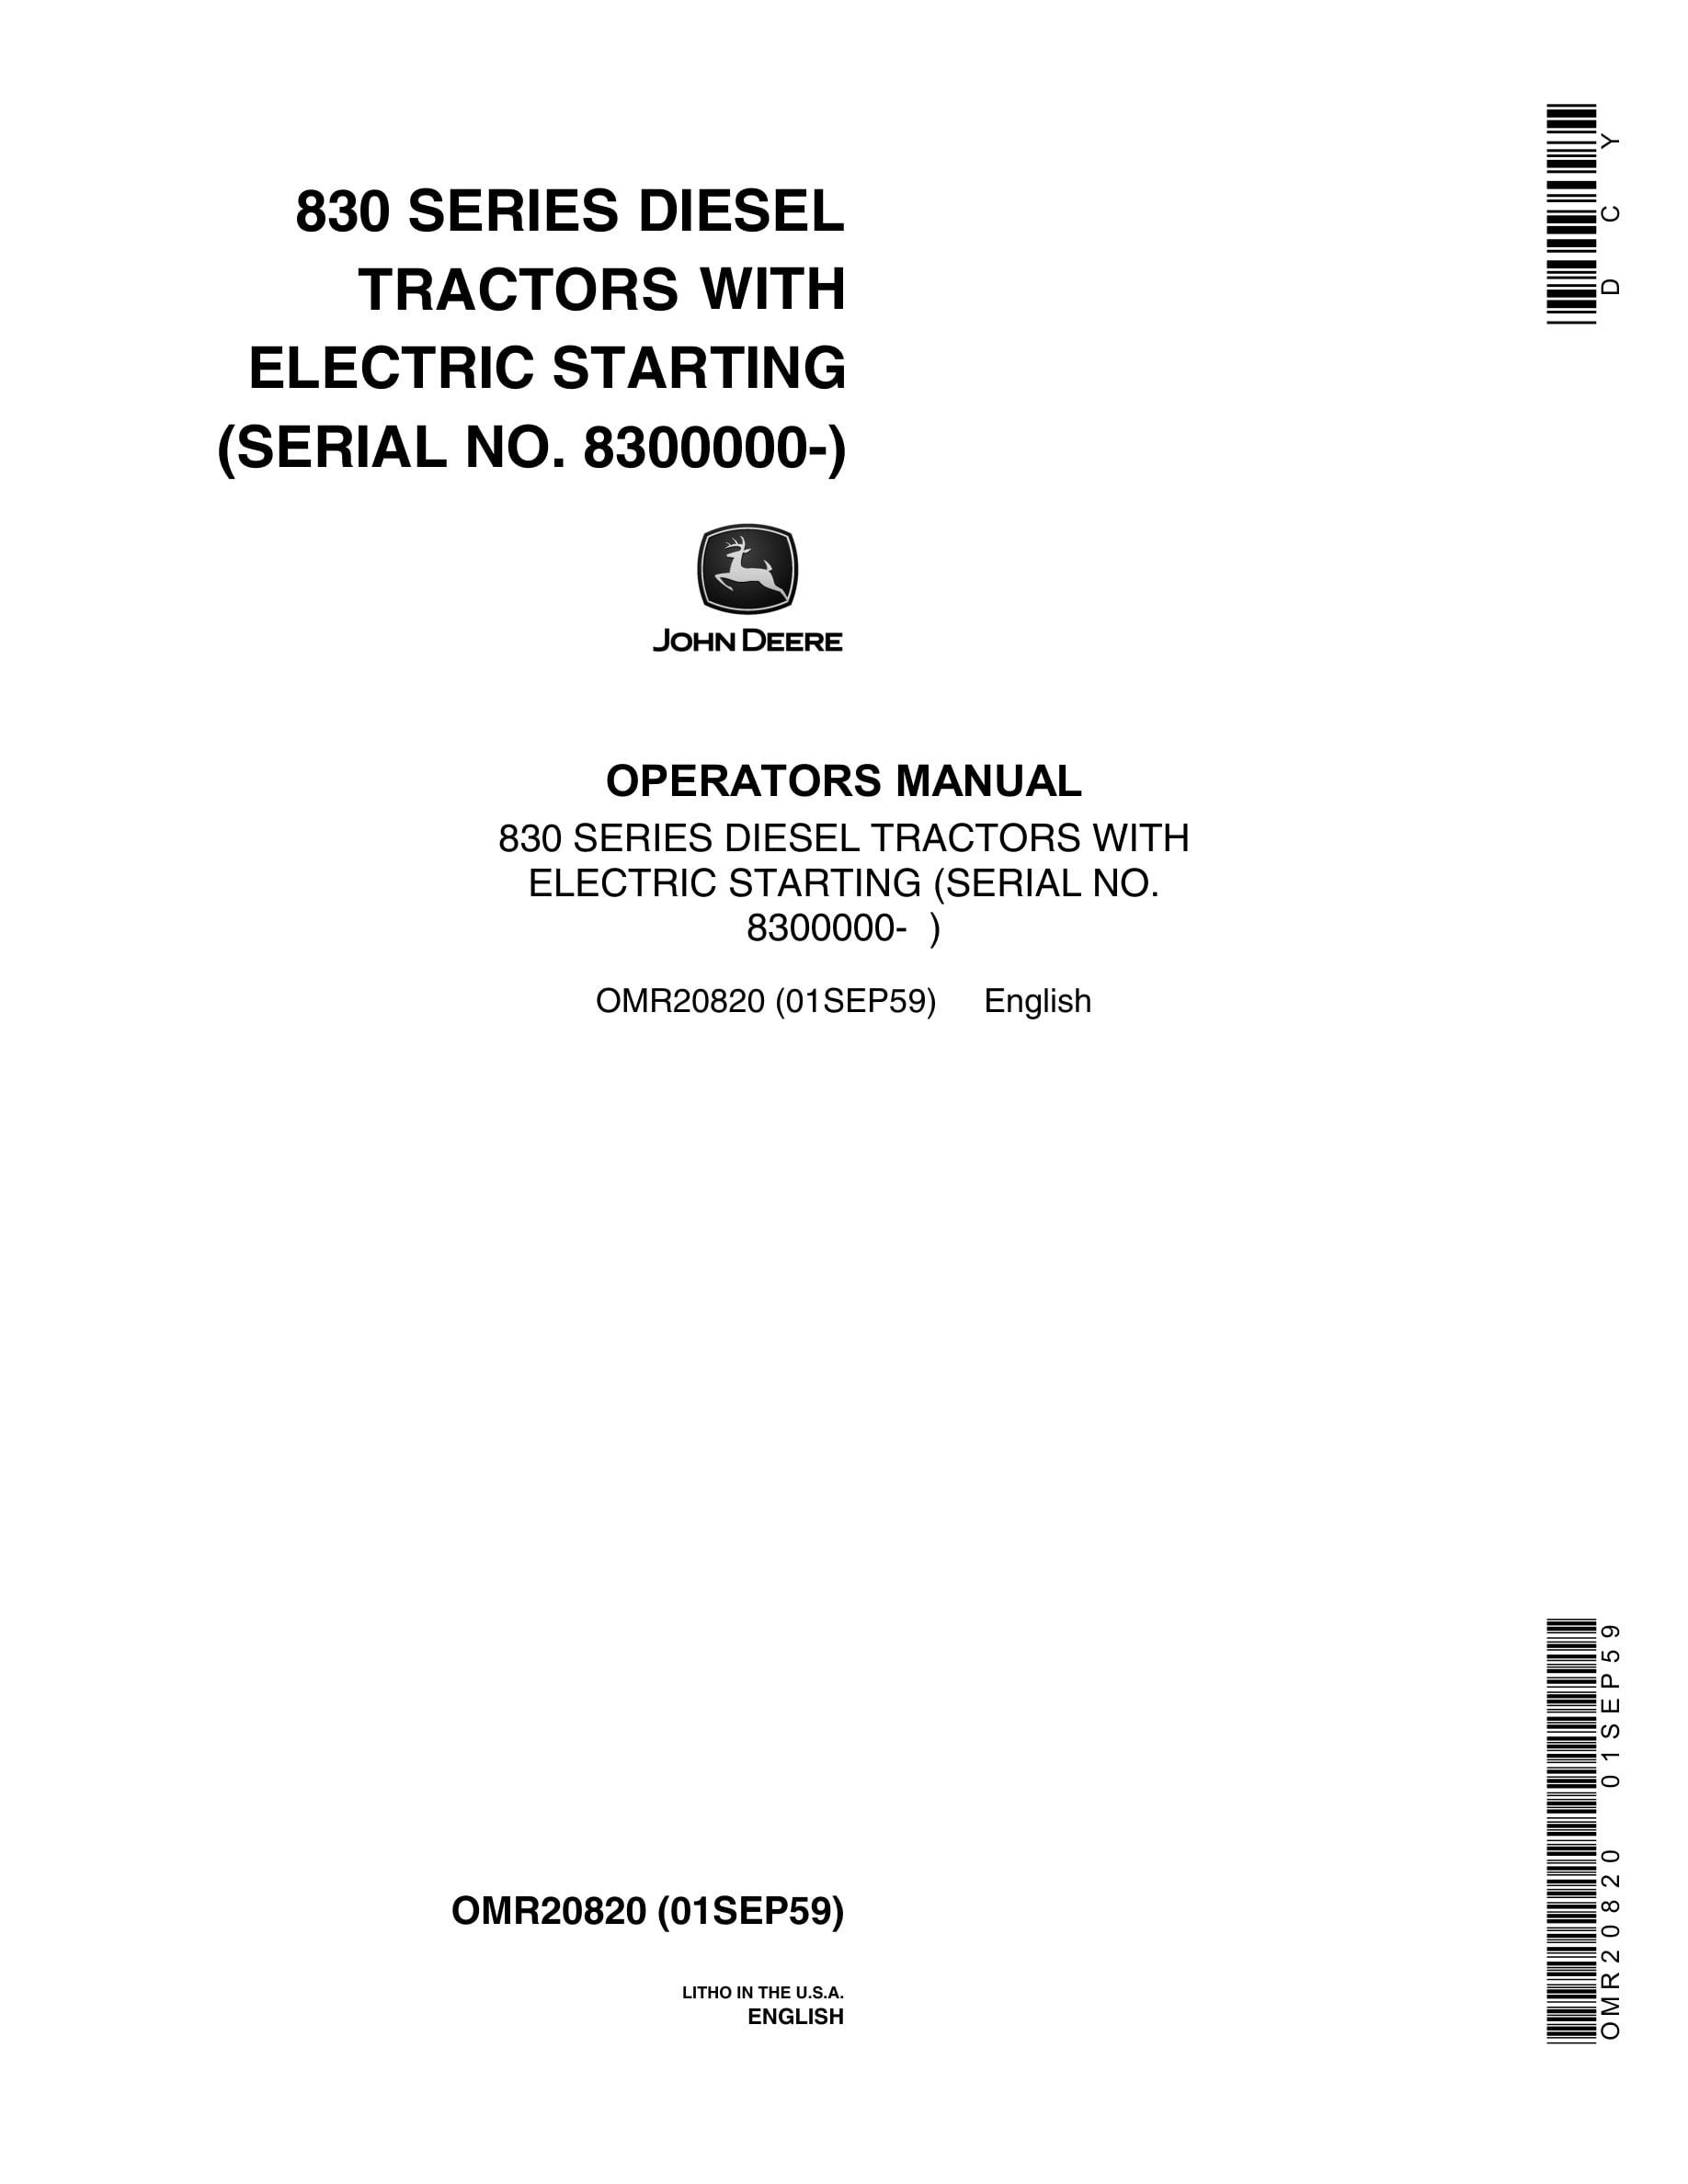 John Deere 830 SERIES Tractor Operator Manual OMR20820-1